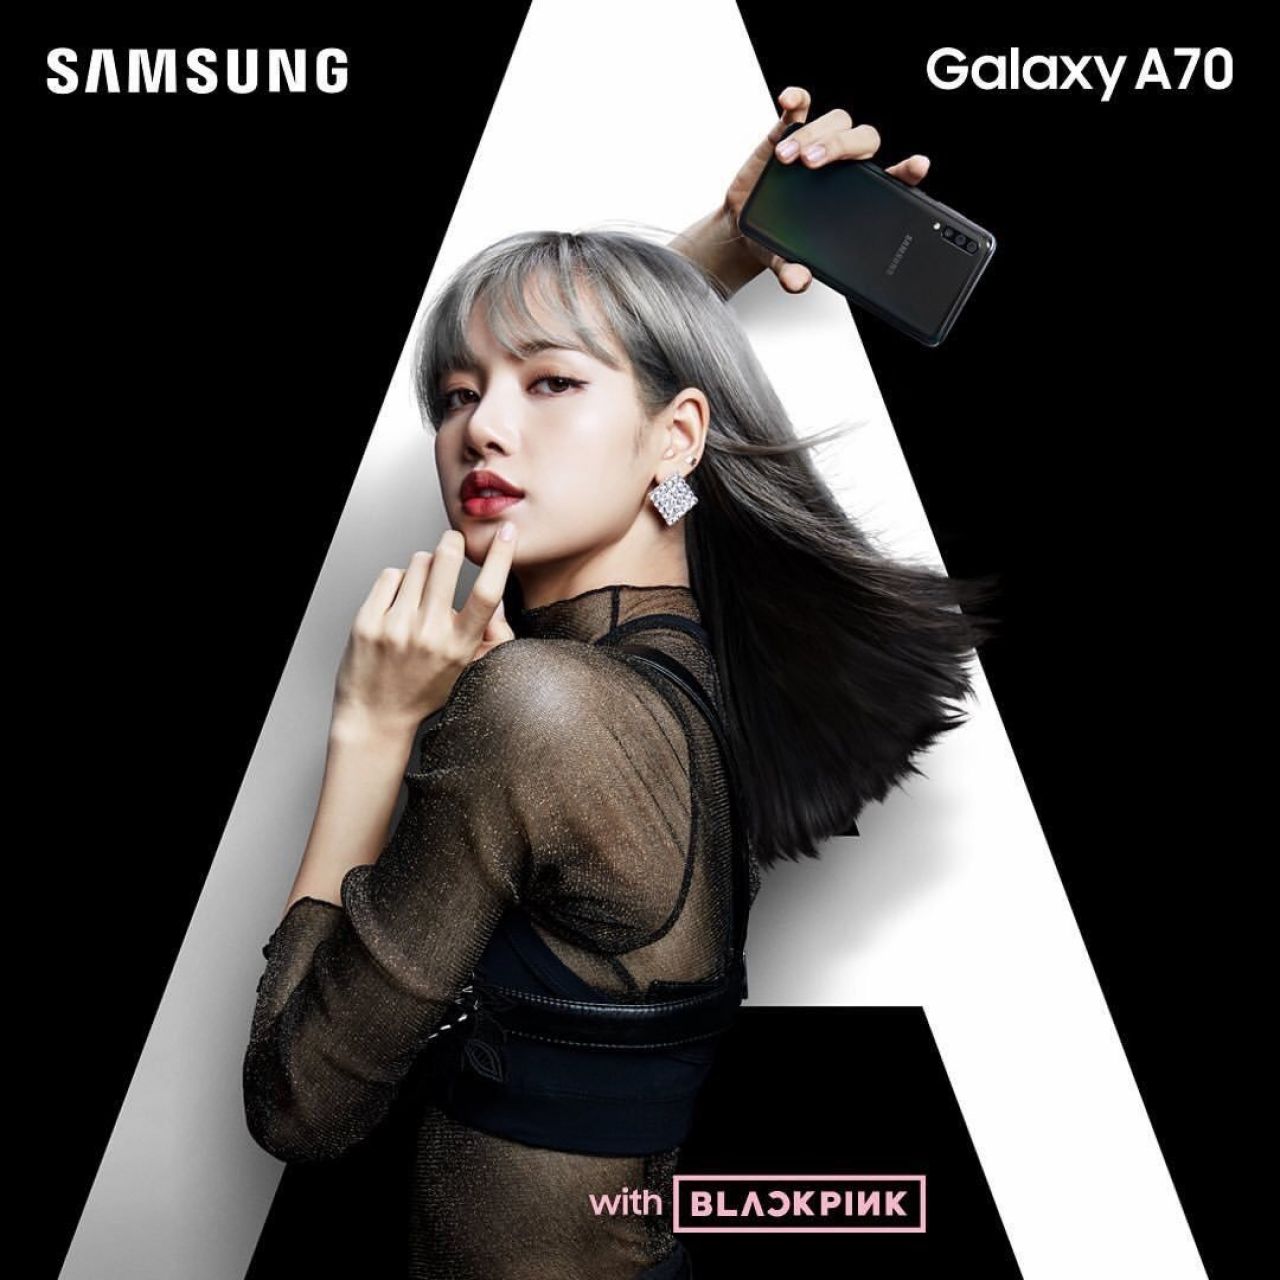 BlackPink - Samsung 2019 â€¢ CelebMafia